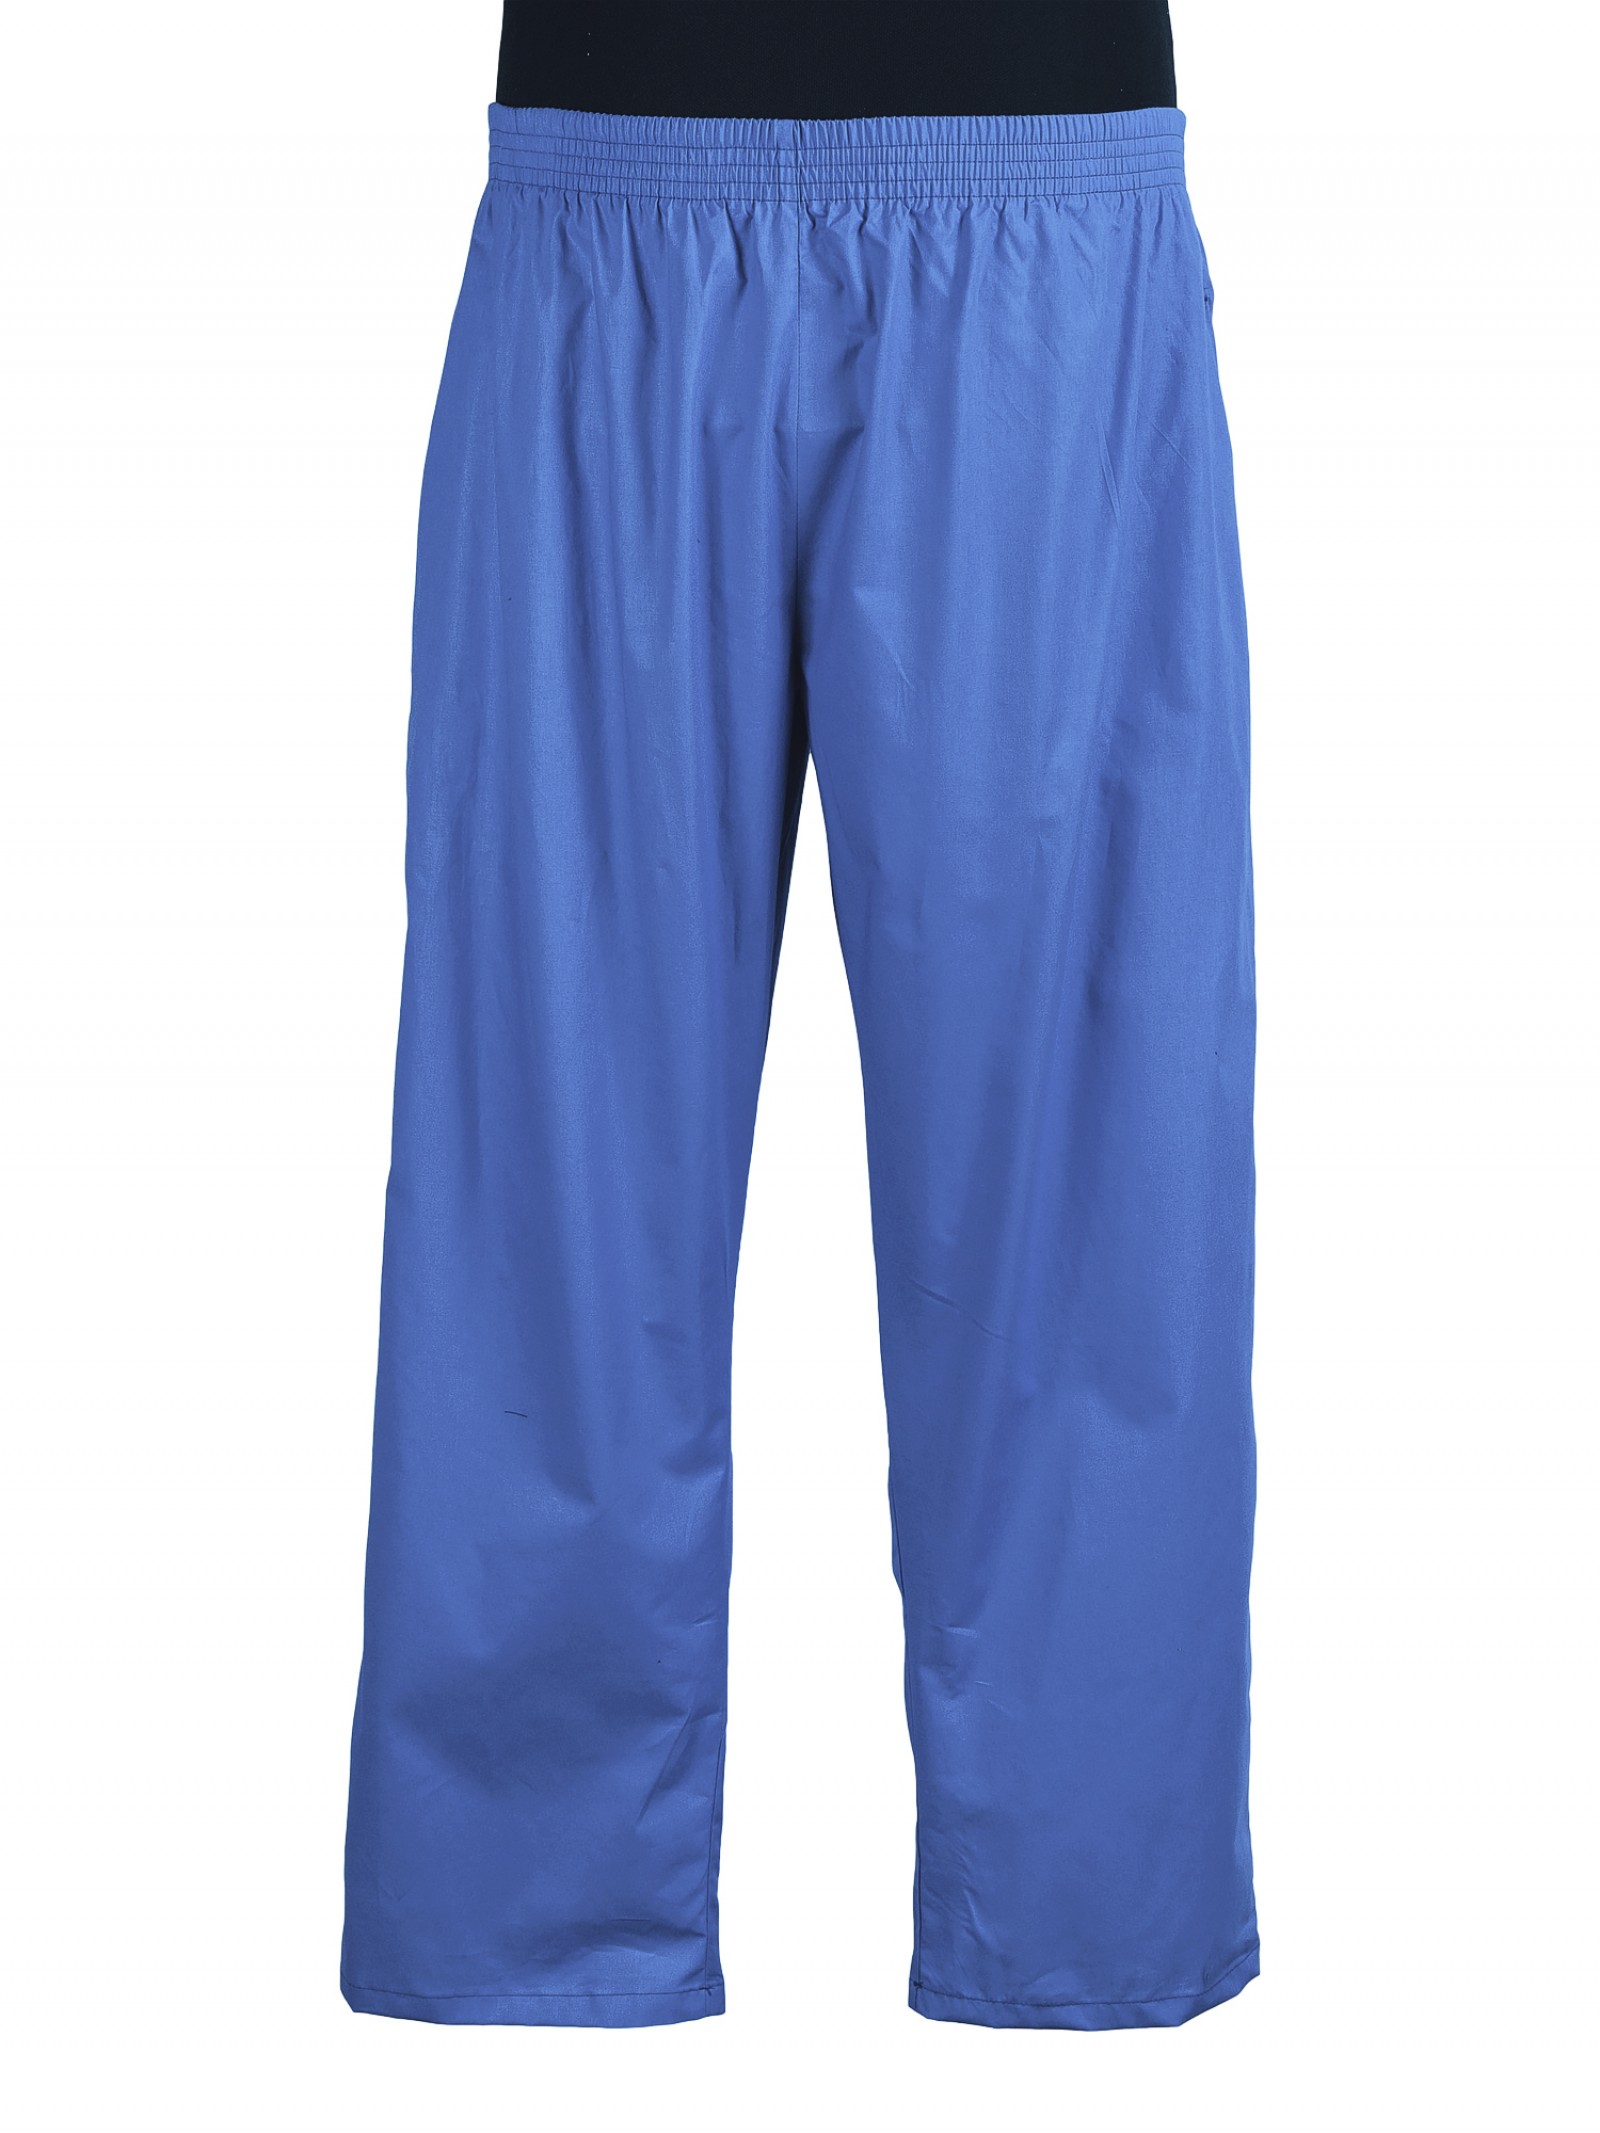 Легкие брюки. Спортивные брюки синие на резинке из хлопка. Лёгкие брюки на резинке. Прямые легкие брюки на резинке.